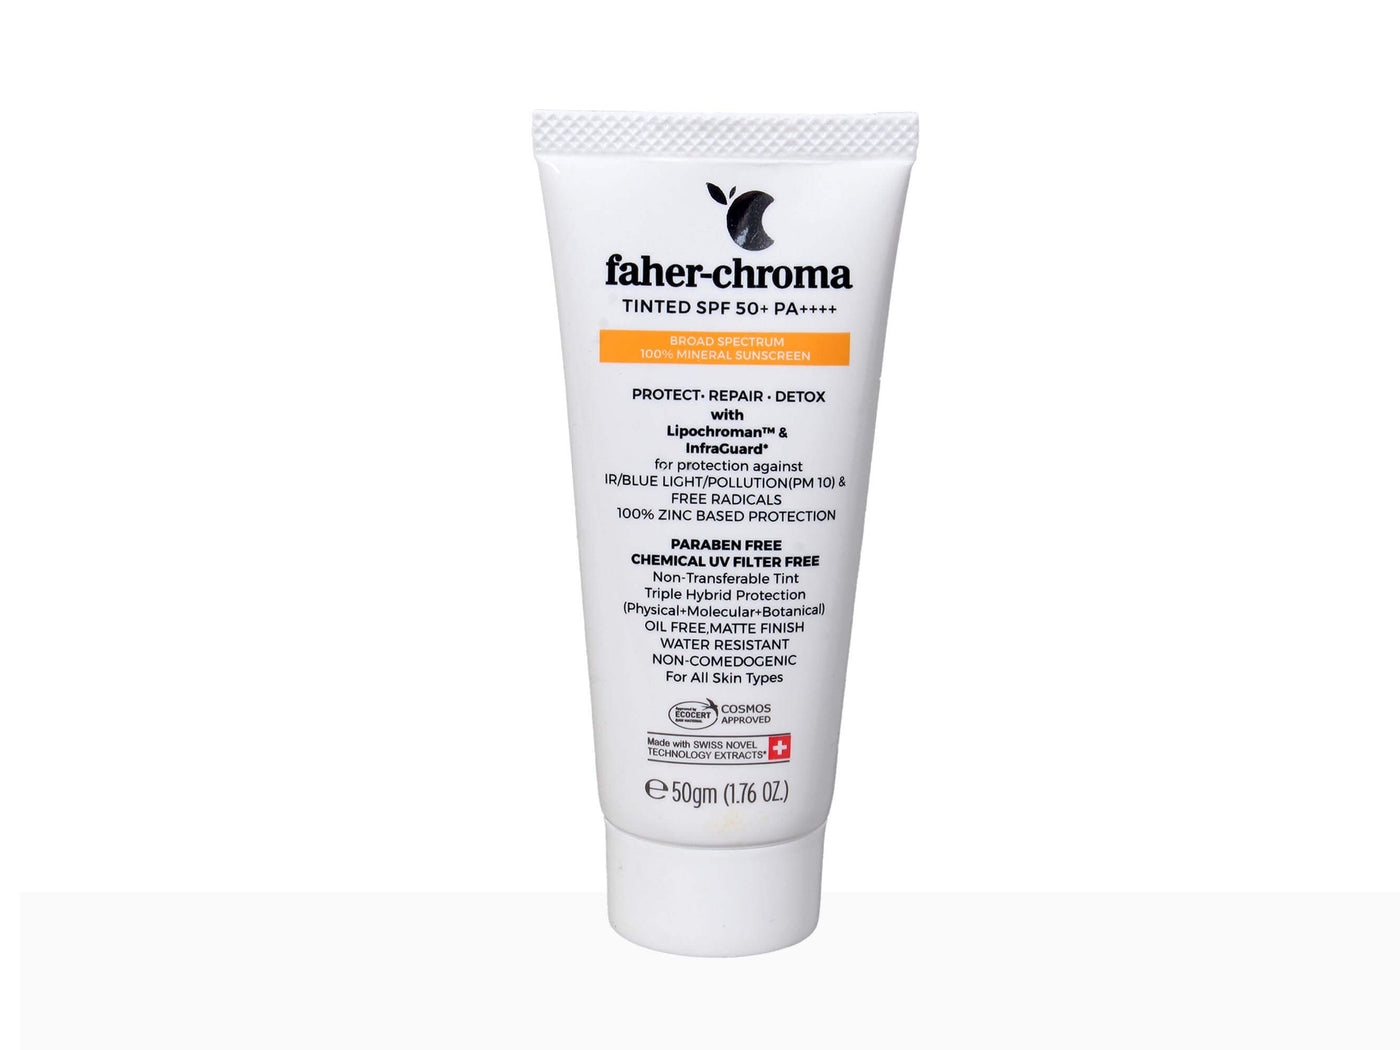 Faher-Chroma Tinted SPF 50+ Sunscreen - Clinikally